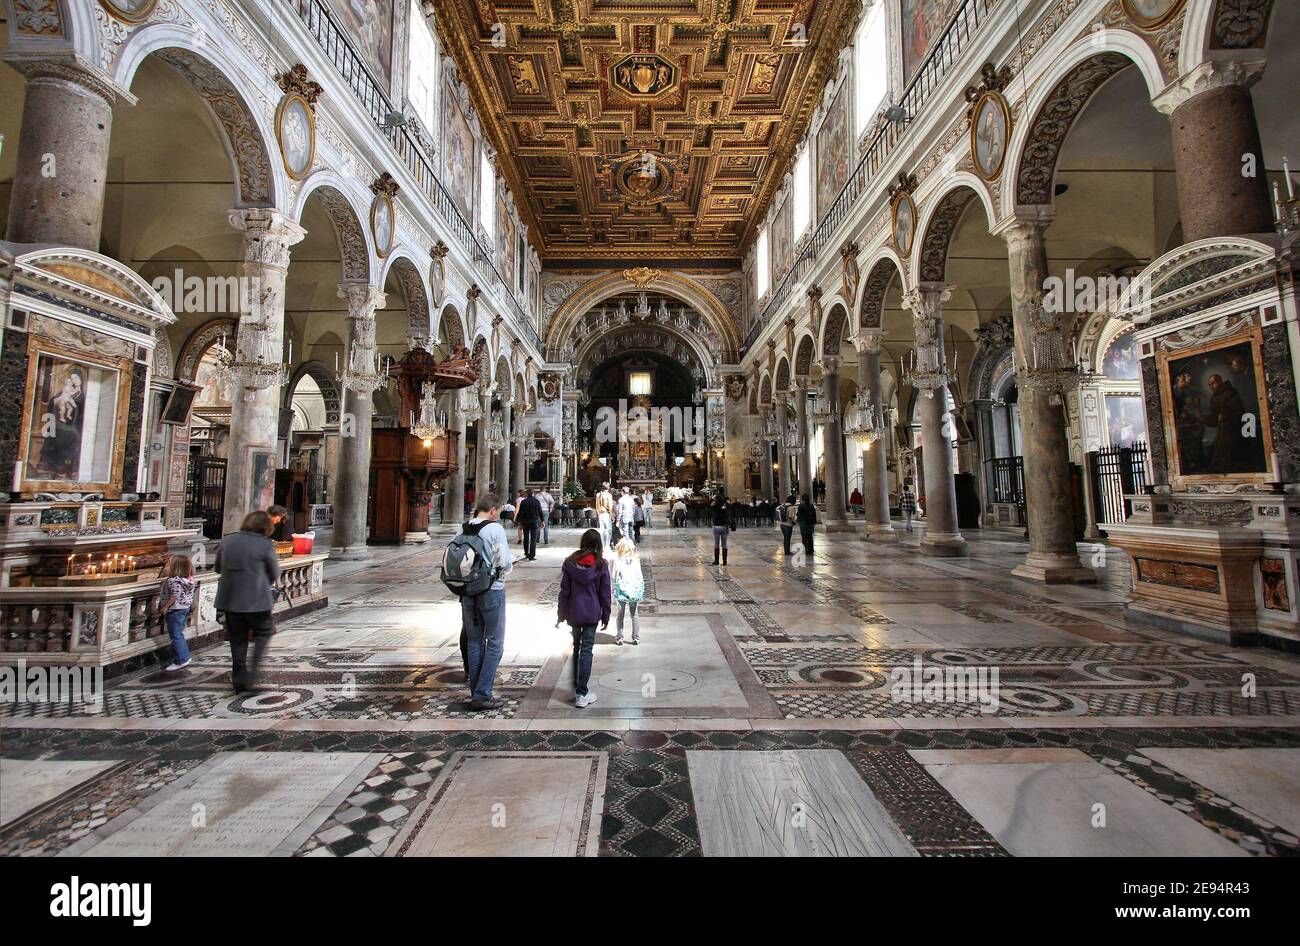 ROMA, ITALIA - 8 APRILE 2012: I turisti visitano la Basilica di Santa Maria in Aracoeli a Roma. La famosa chiesa romanica risale al 12 ° secolo. Foto Stock